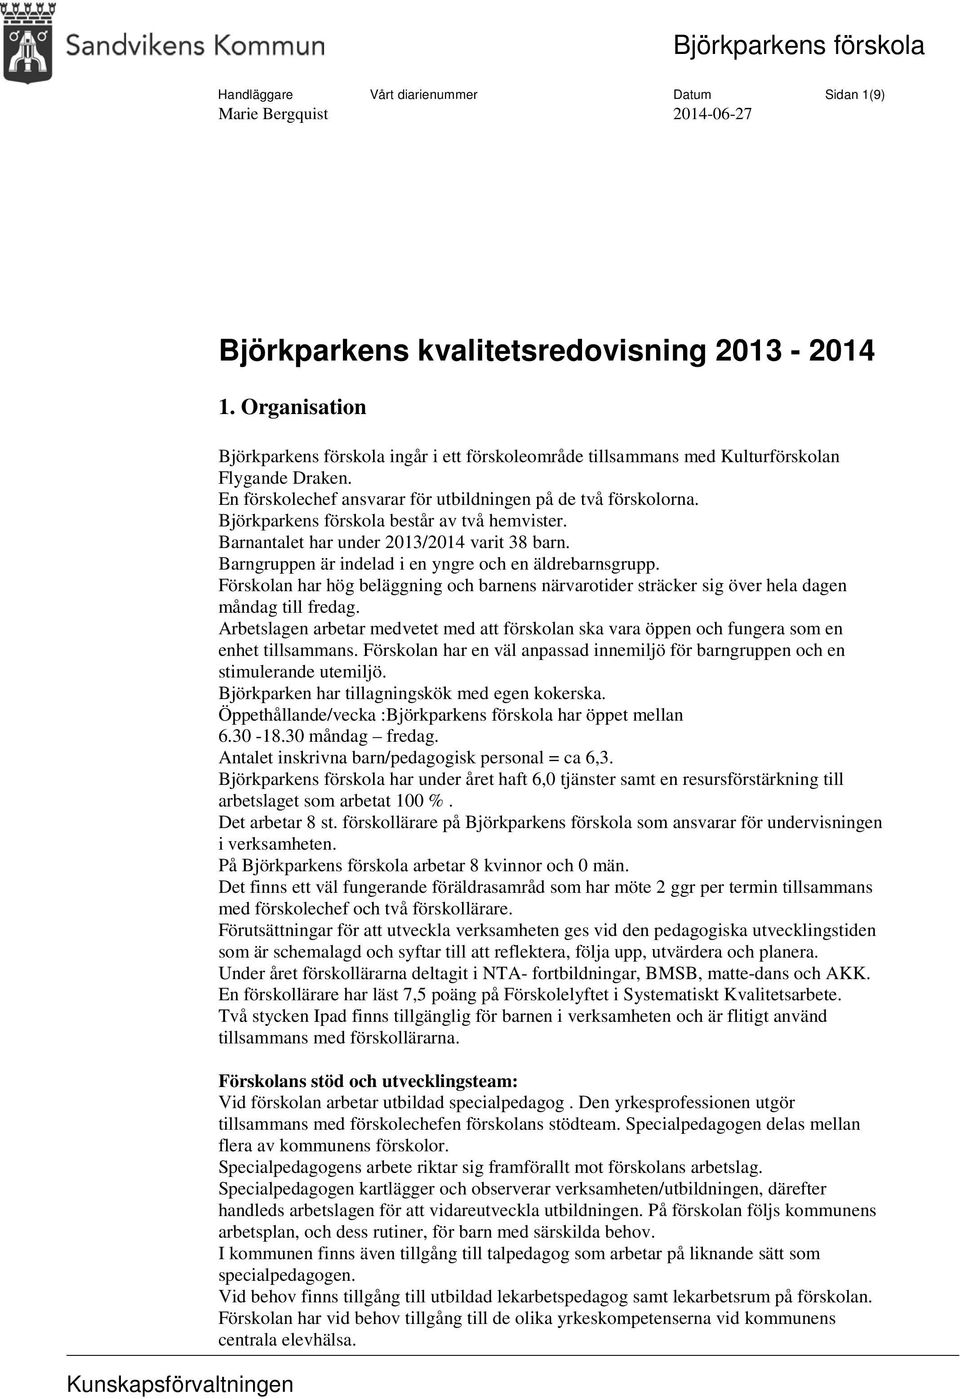 Björkparkens förskola består av två hemvister. Barnantalet har under 2013/2014 varit 38 barn. Barngruppen är indelad i en yngre och en äldrebarnsgrupp.